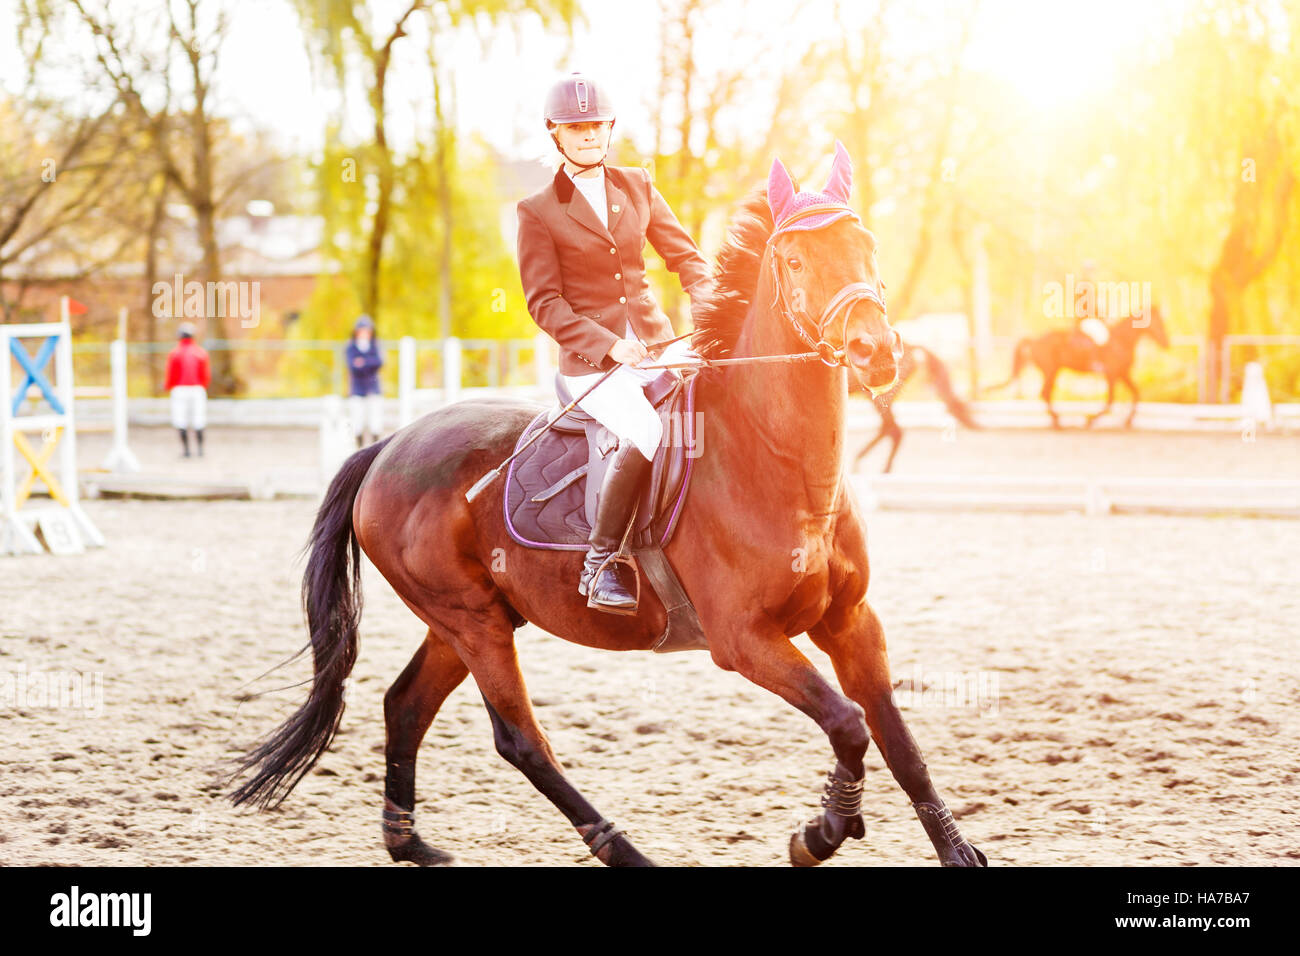 Mujer joven jinete en caballo en la competencia. Antecedentes del deporte ecuestre Foto de stock